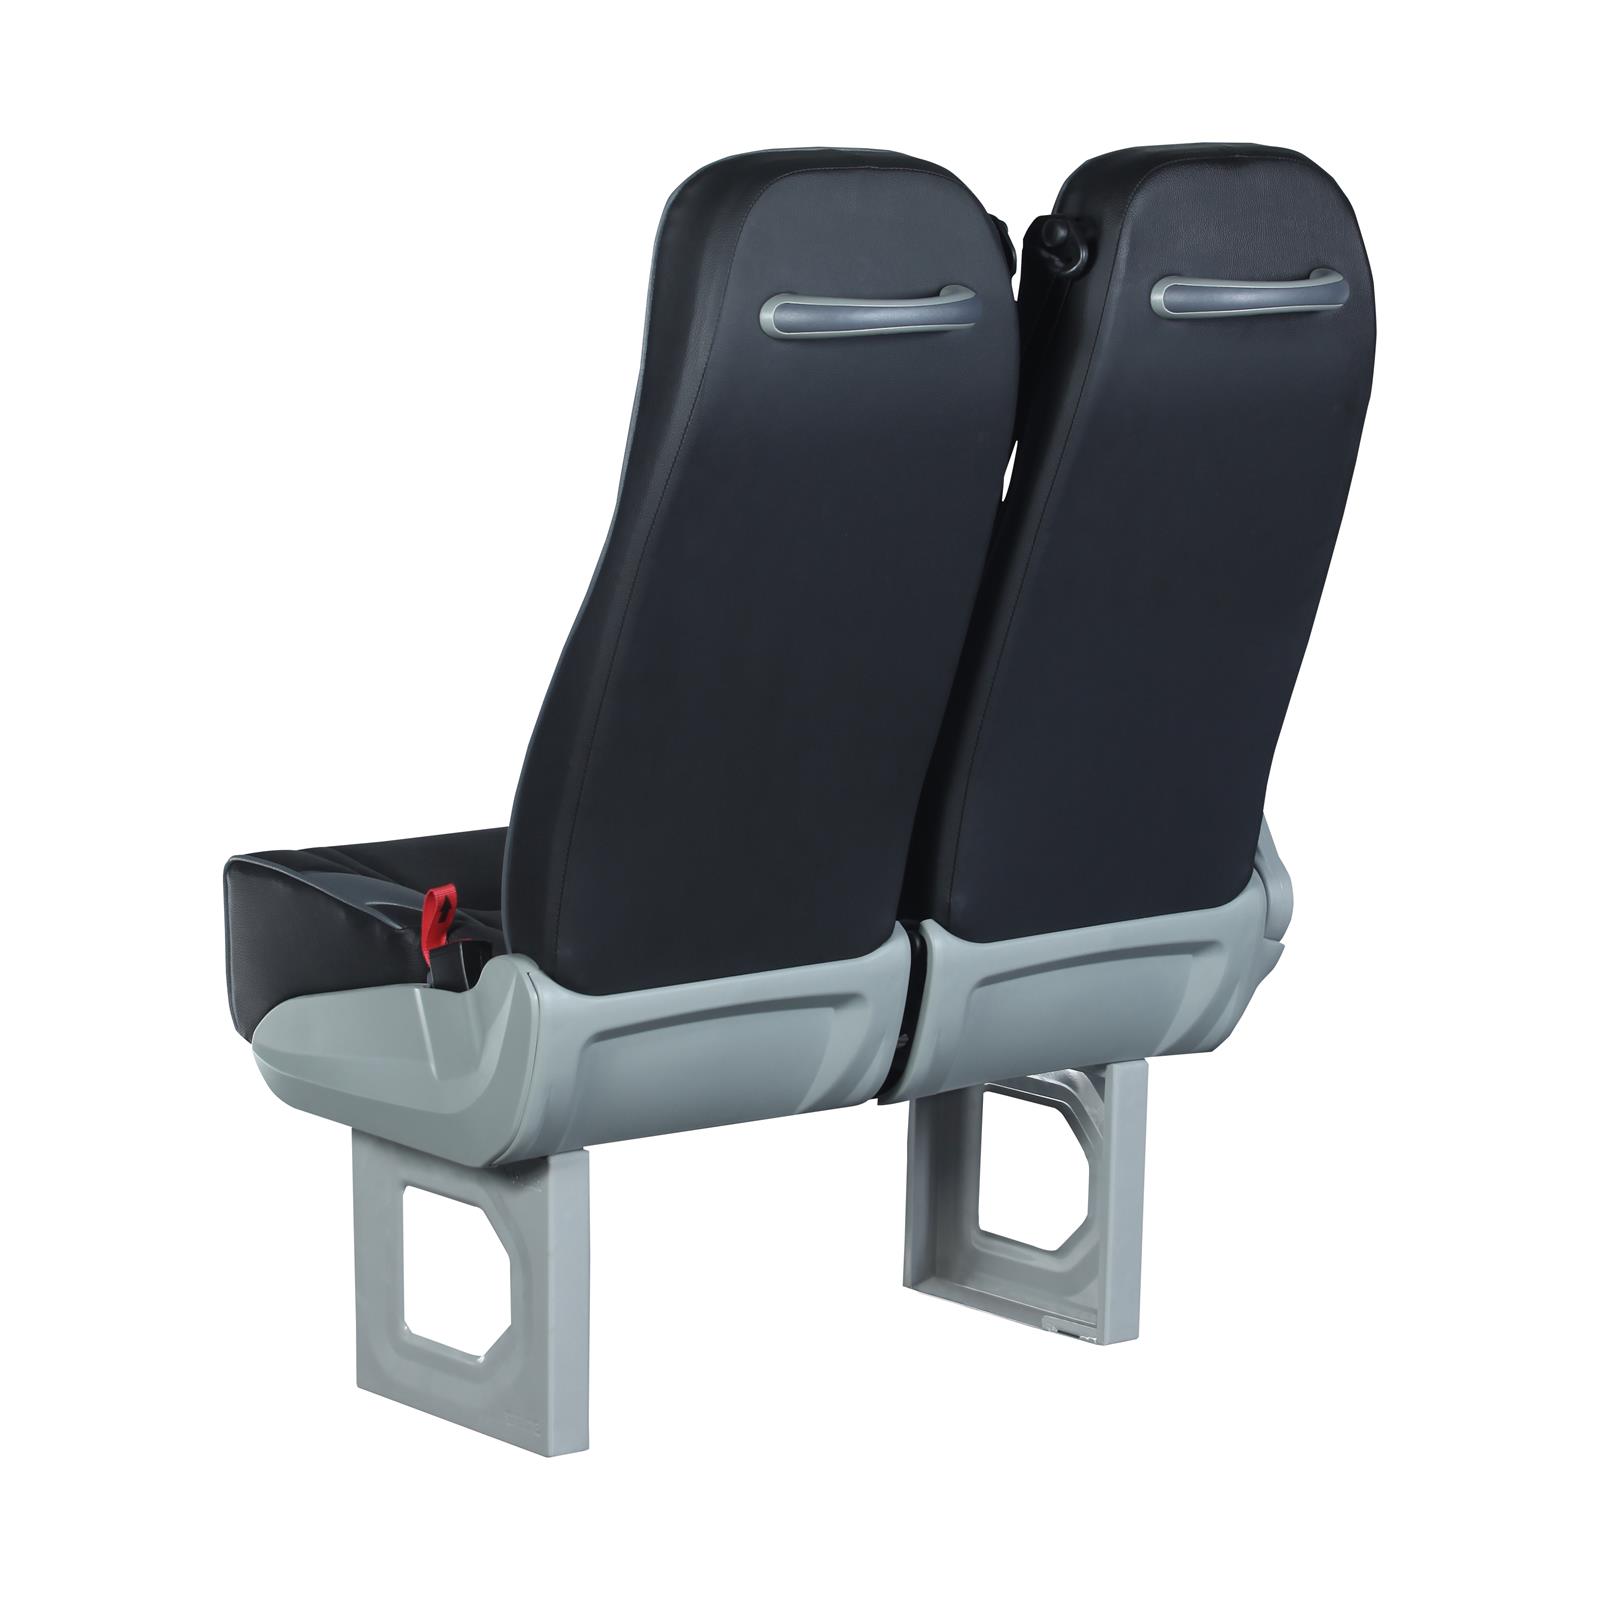 image shows Sege Passenger 3040 Bus Seat